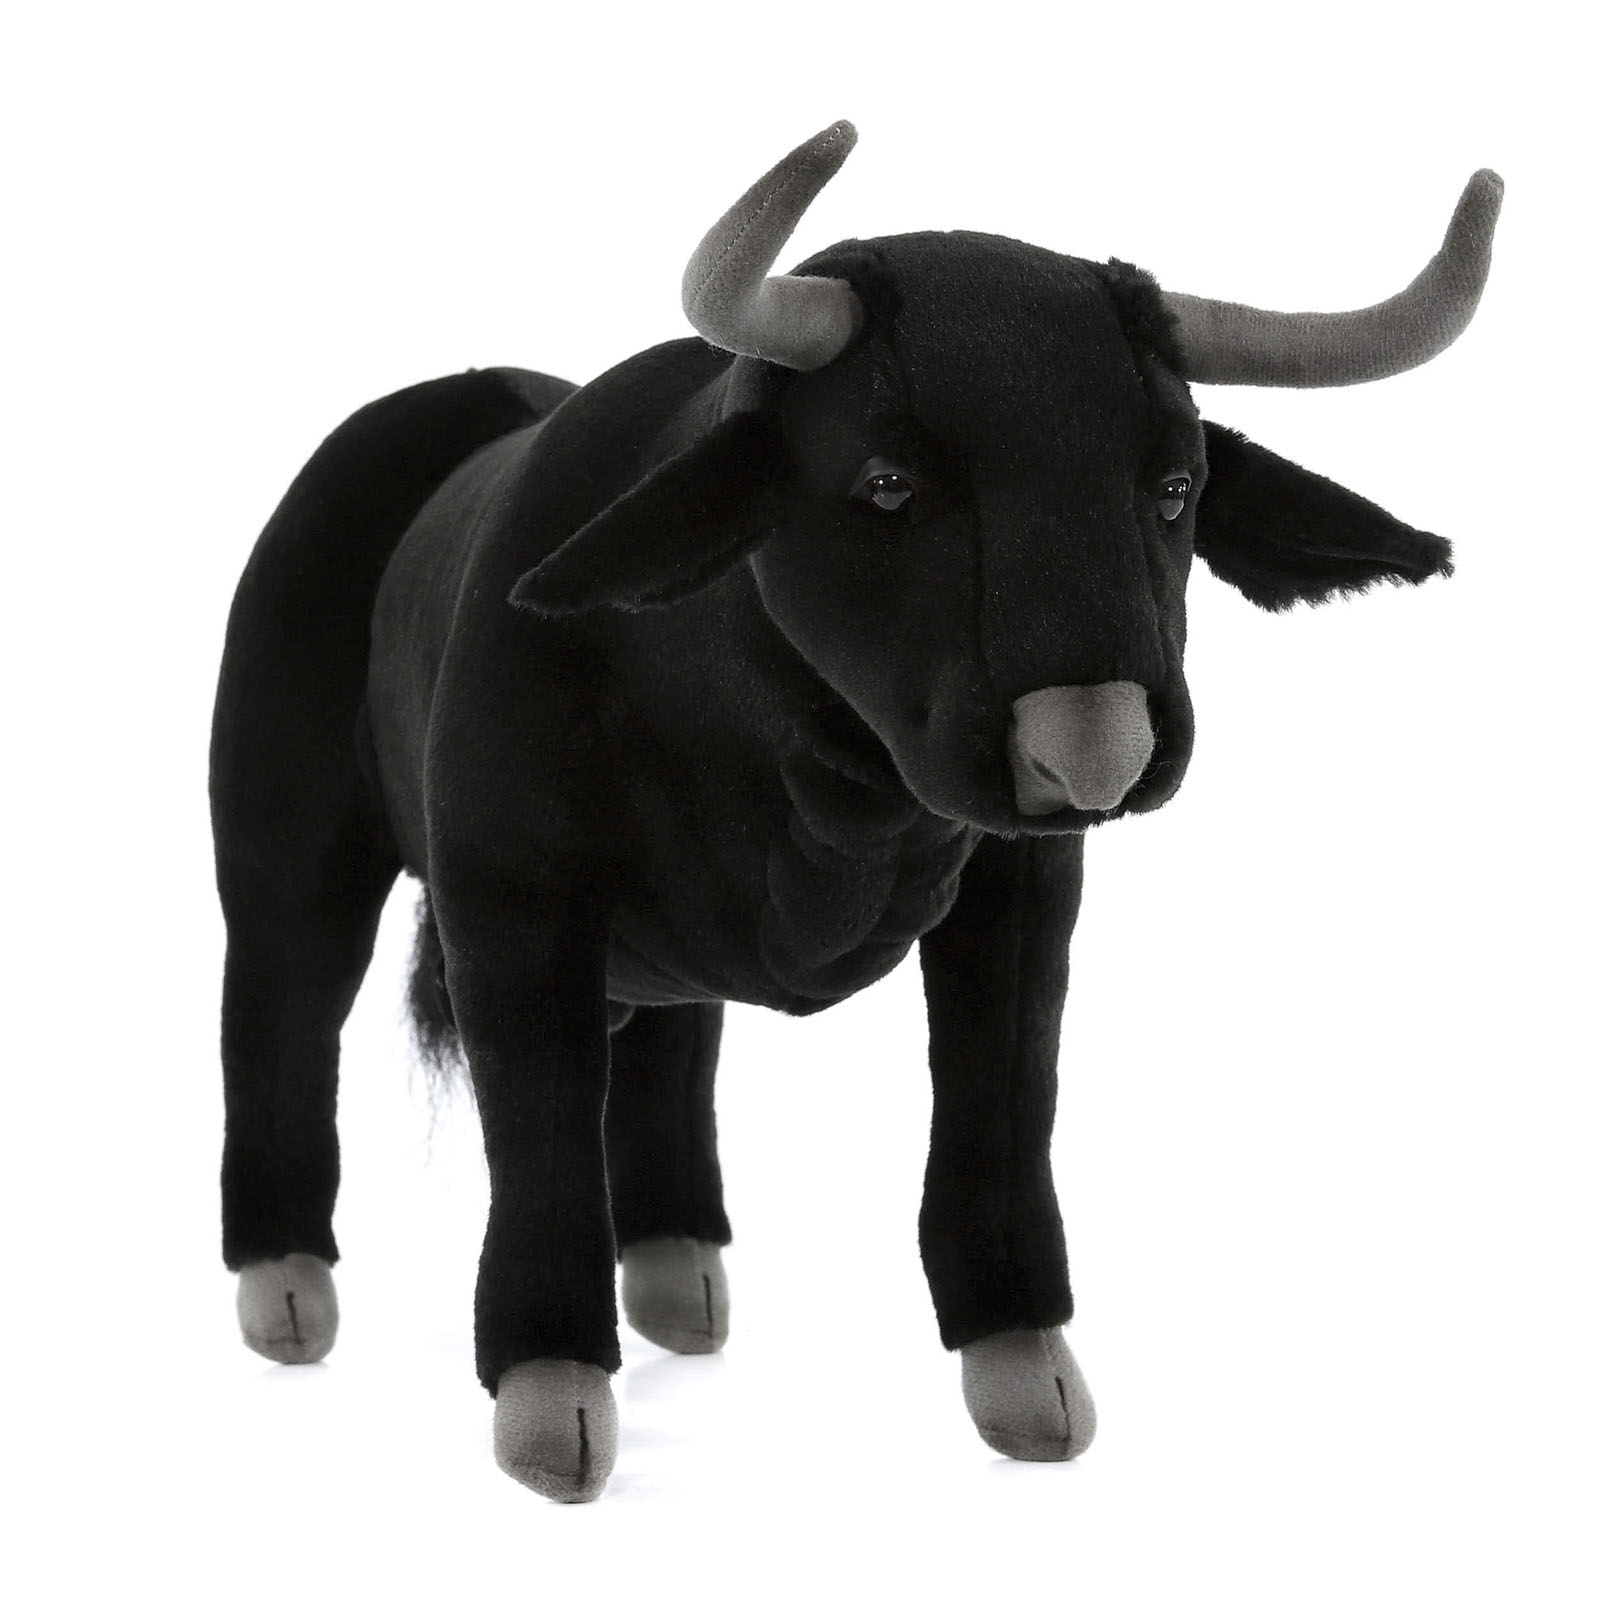 Реалистичная мягкая игрушка Hansa Creation Испанский бык, 40 см мягкая игрушка hansa львенок 18 см